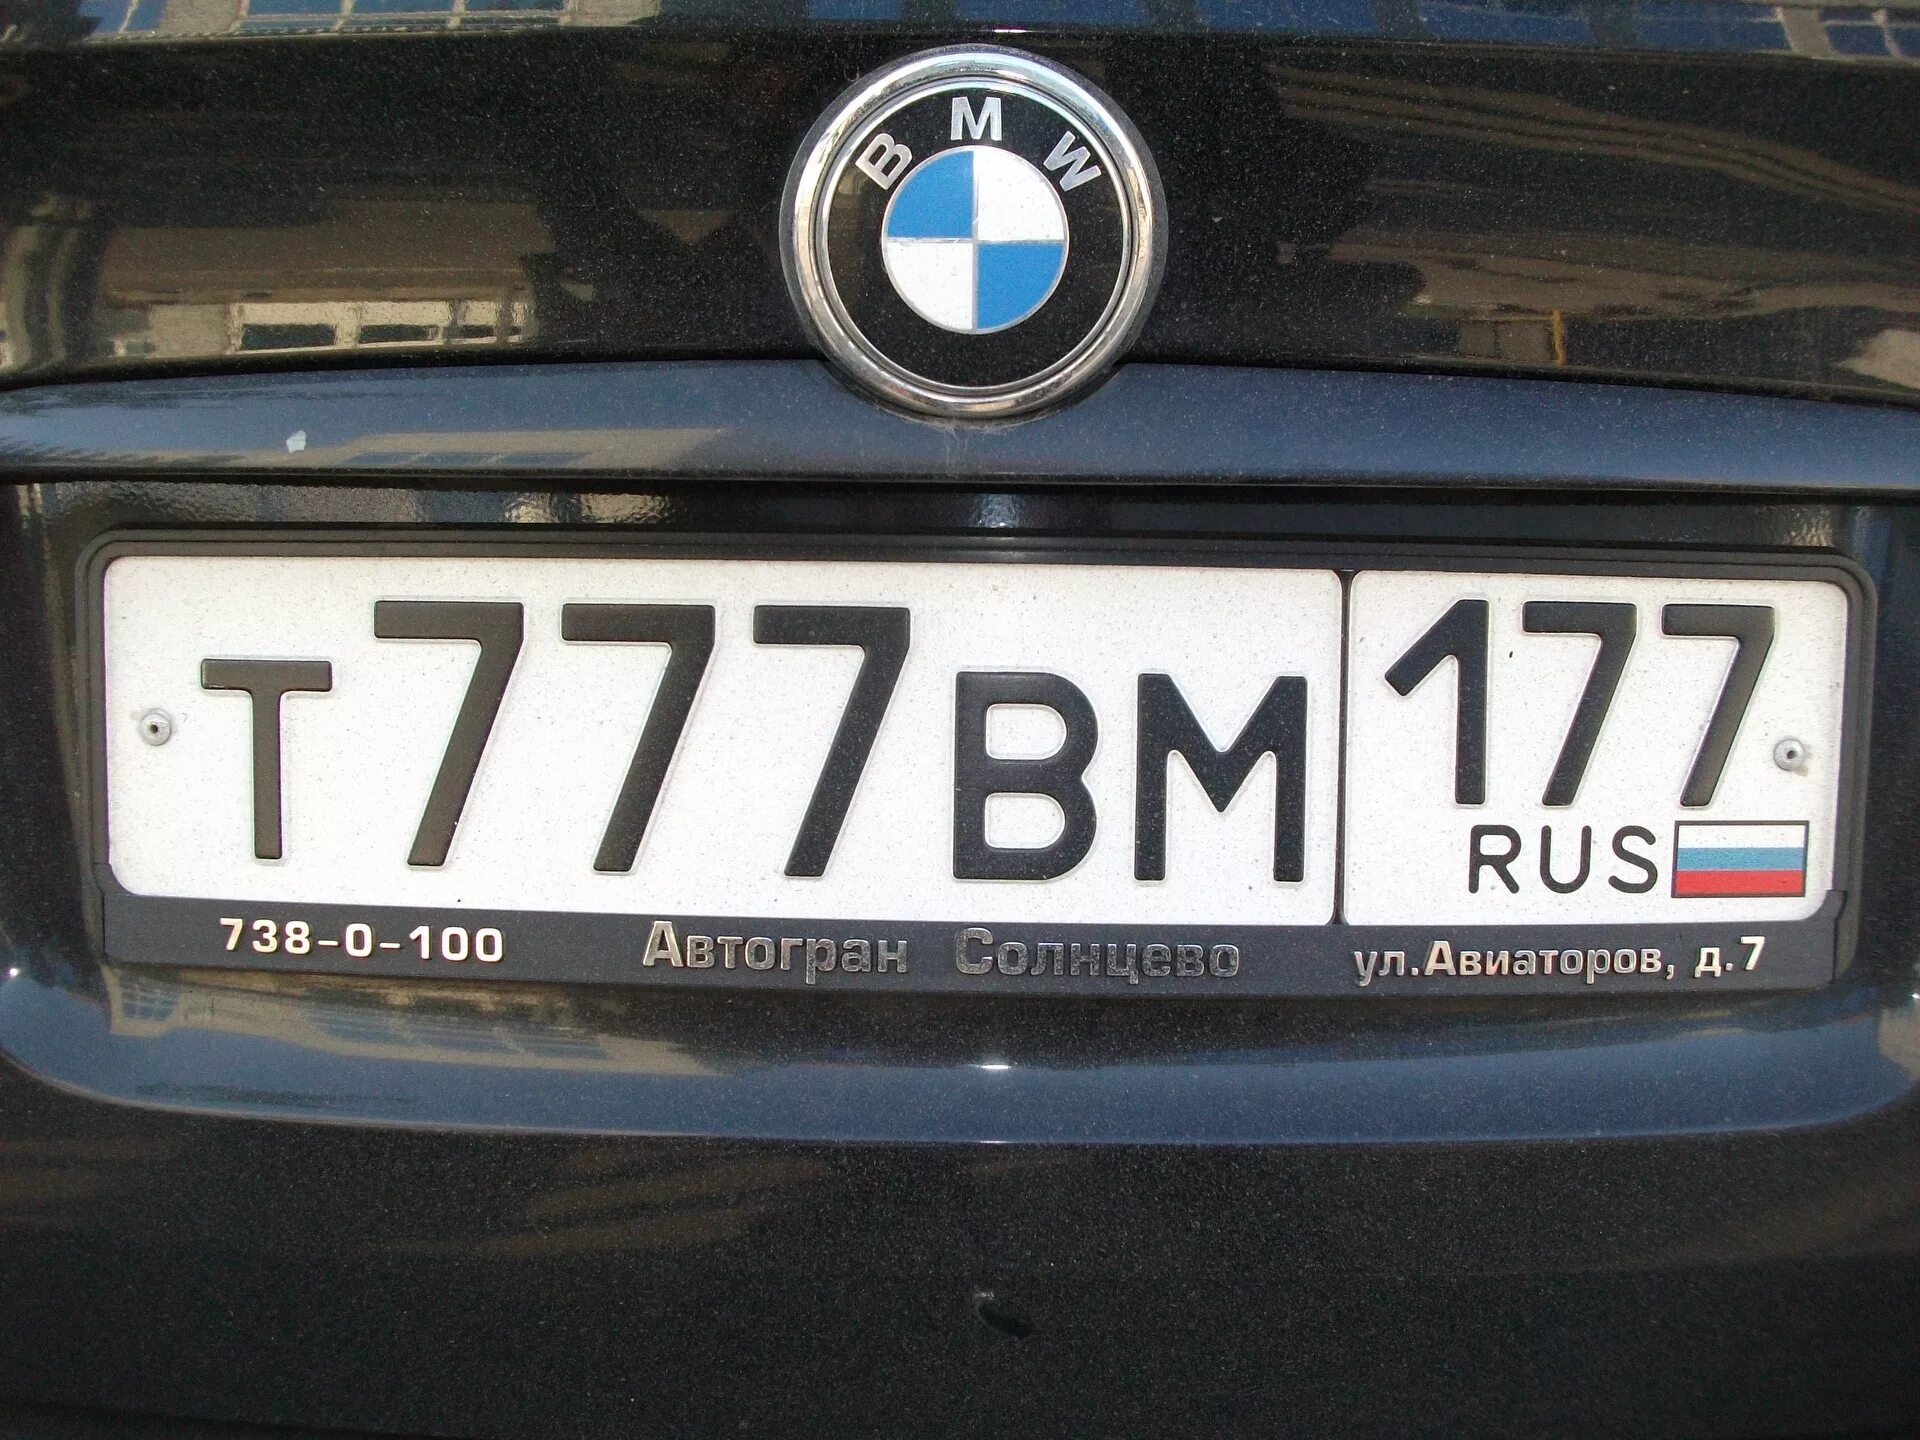 Номера машин. Номерной знак автомобиля. Российские номера. Российские номера машин. Пародия номера